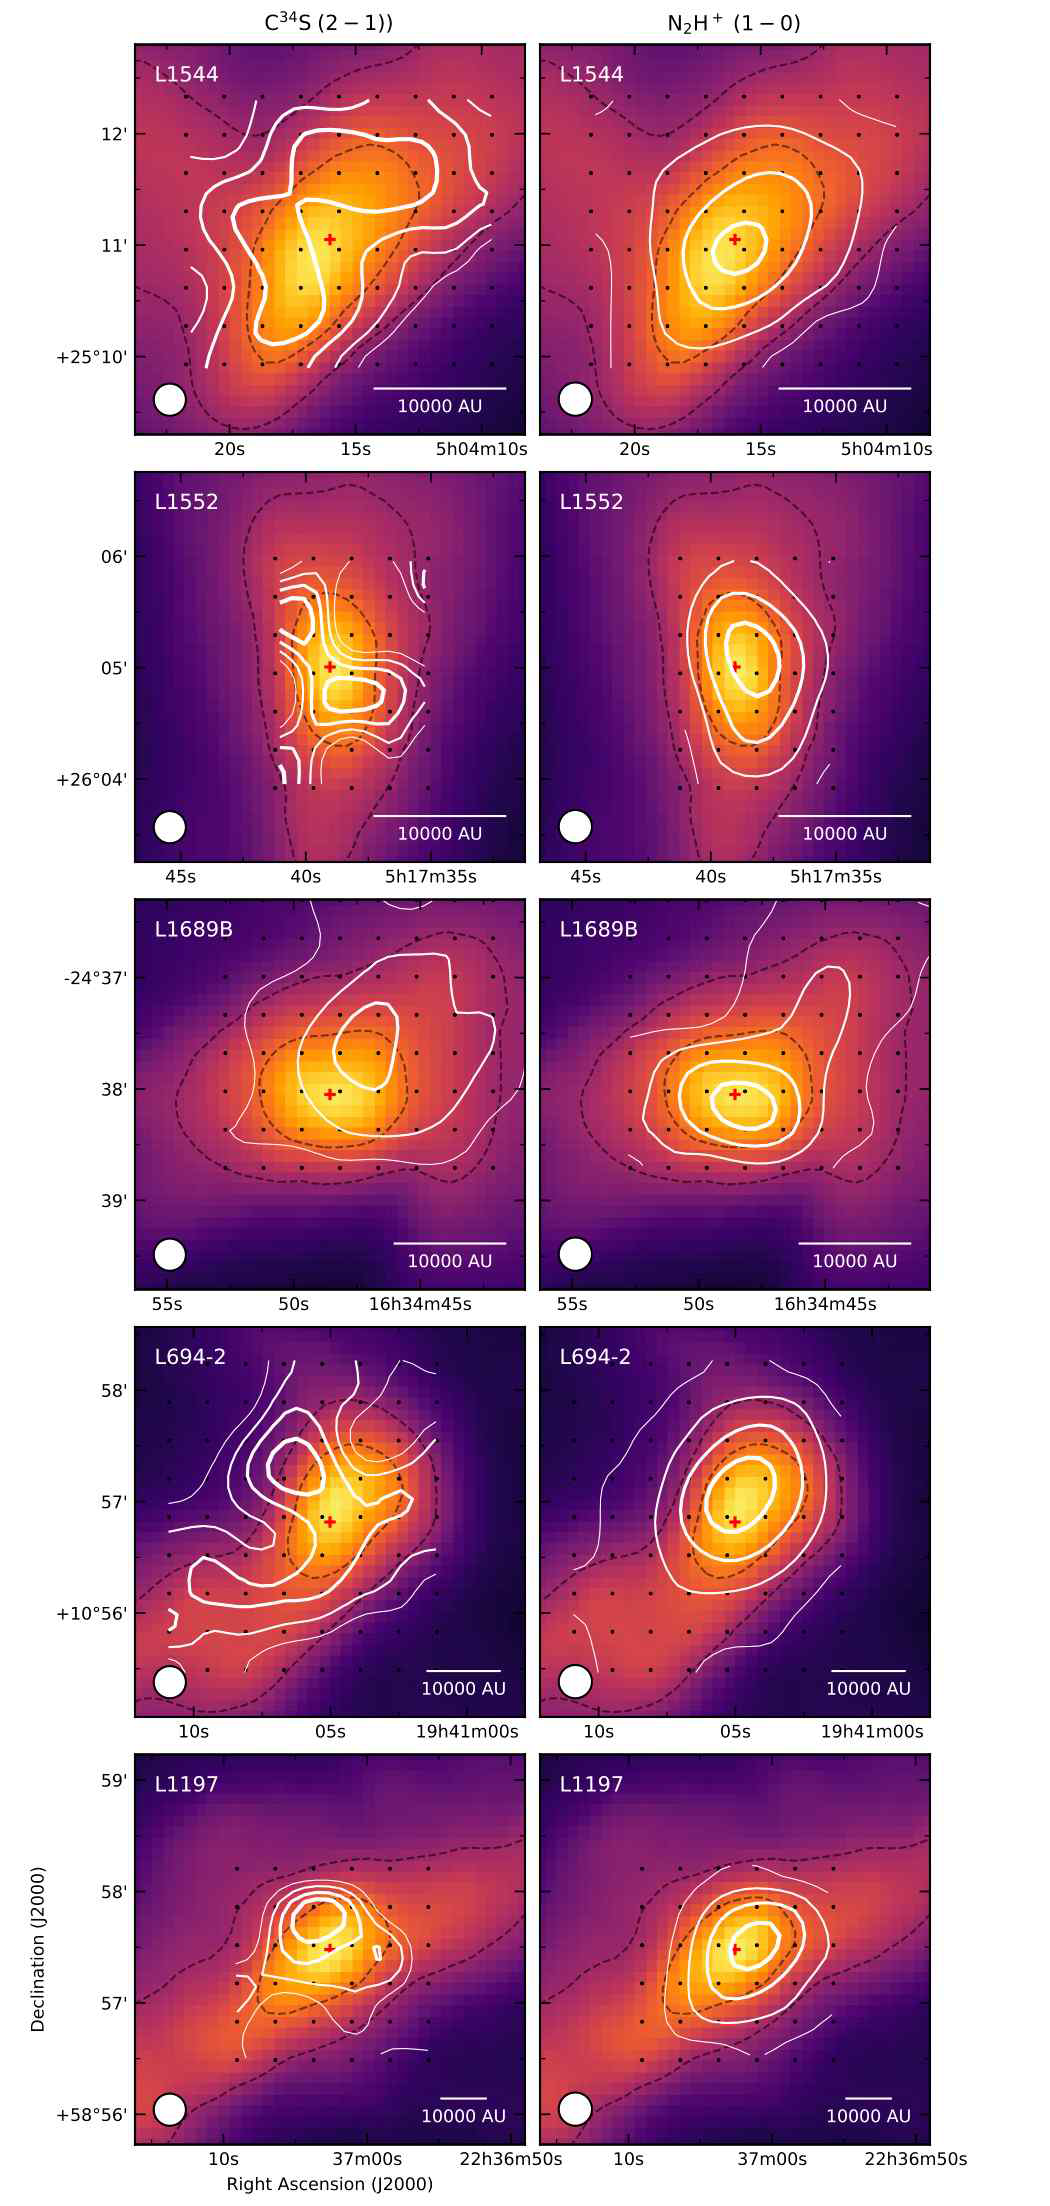 C34S (좌) 와 N2H+(우) 분자선의 적분세기 분포 지도. 배경은 Herschel 위성 망원경의 250 μm 성간티끌 연속선 지도